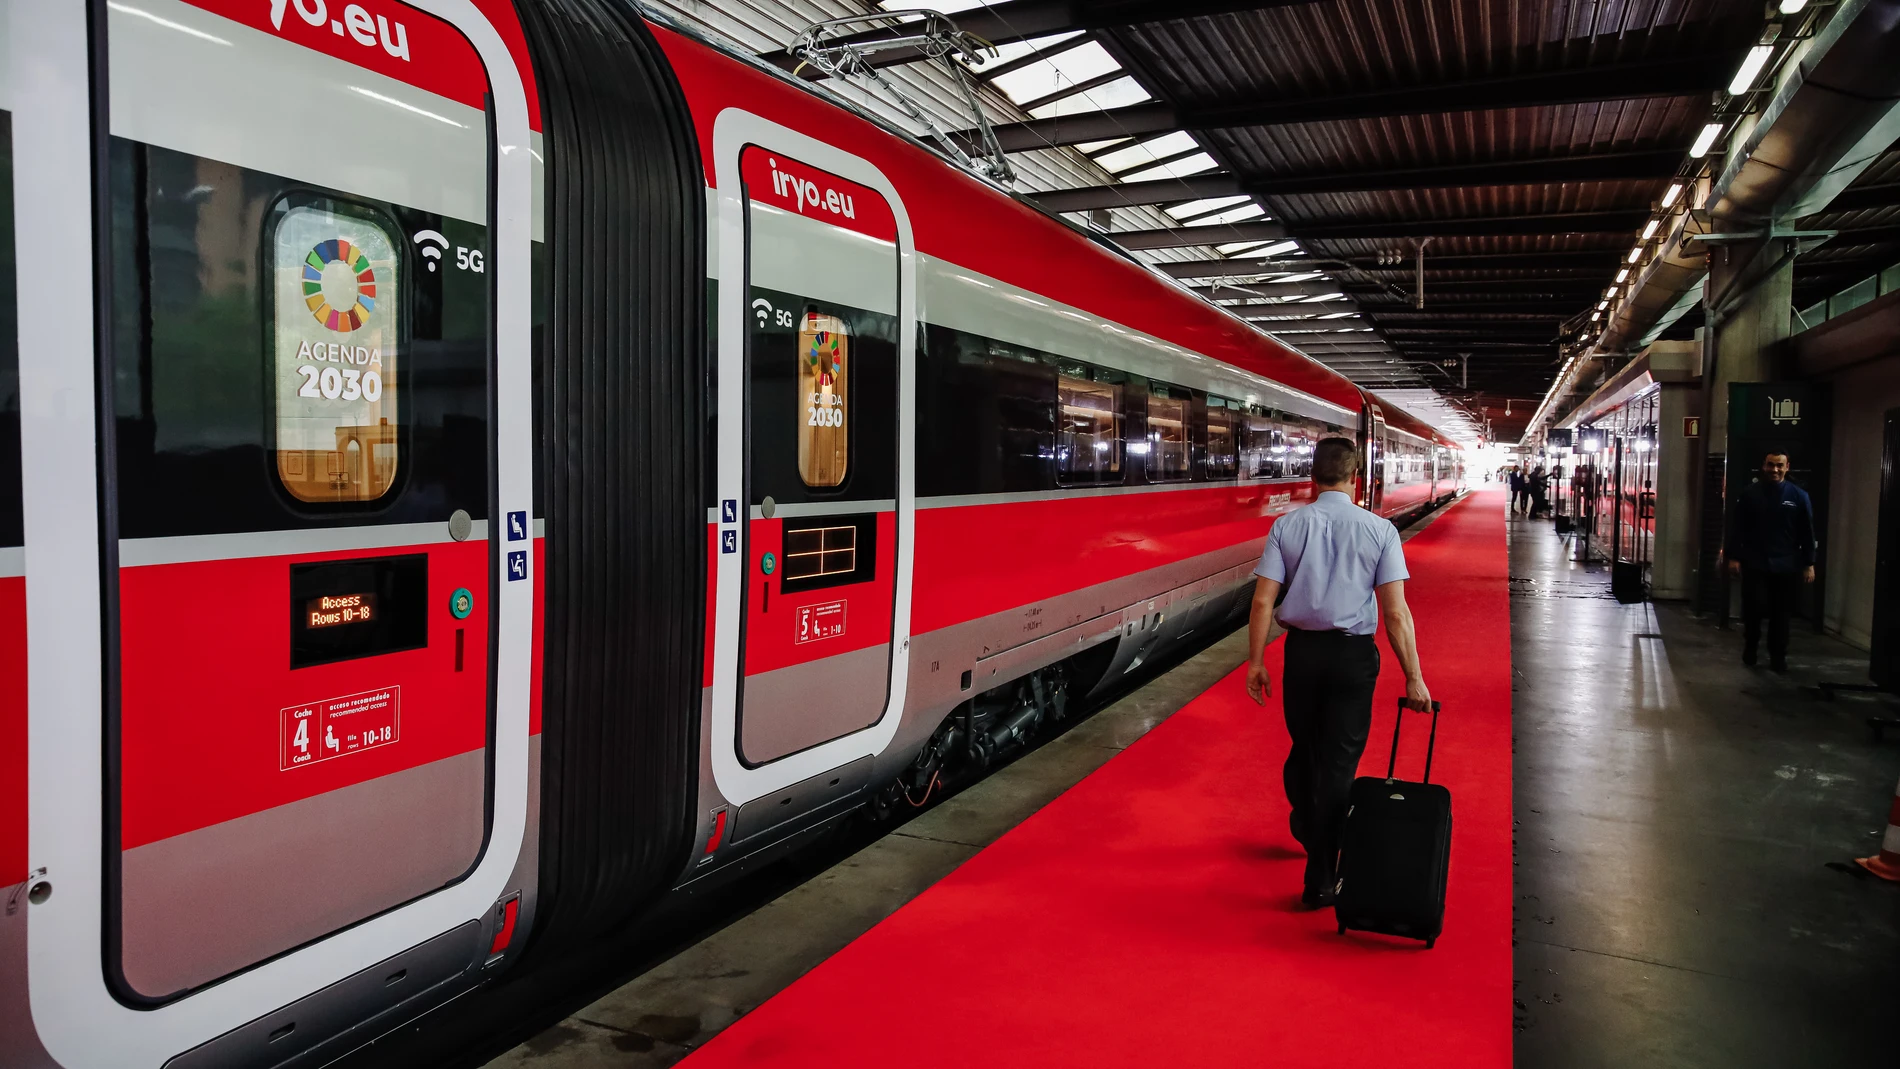 Tren de la operadora ferroviaria Iryo en las vías durante la presentación de la compañía, en la estación de Atocha, a 15 de septiembre de 2022, en Madrid (España)